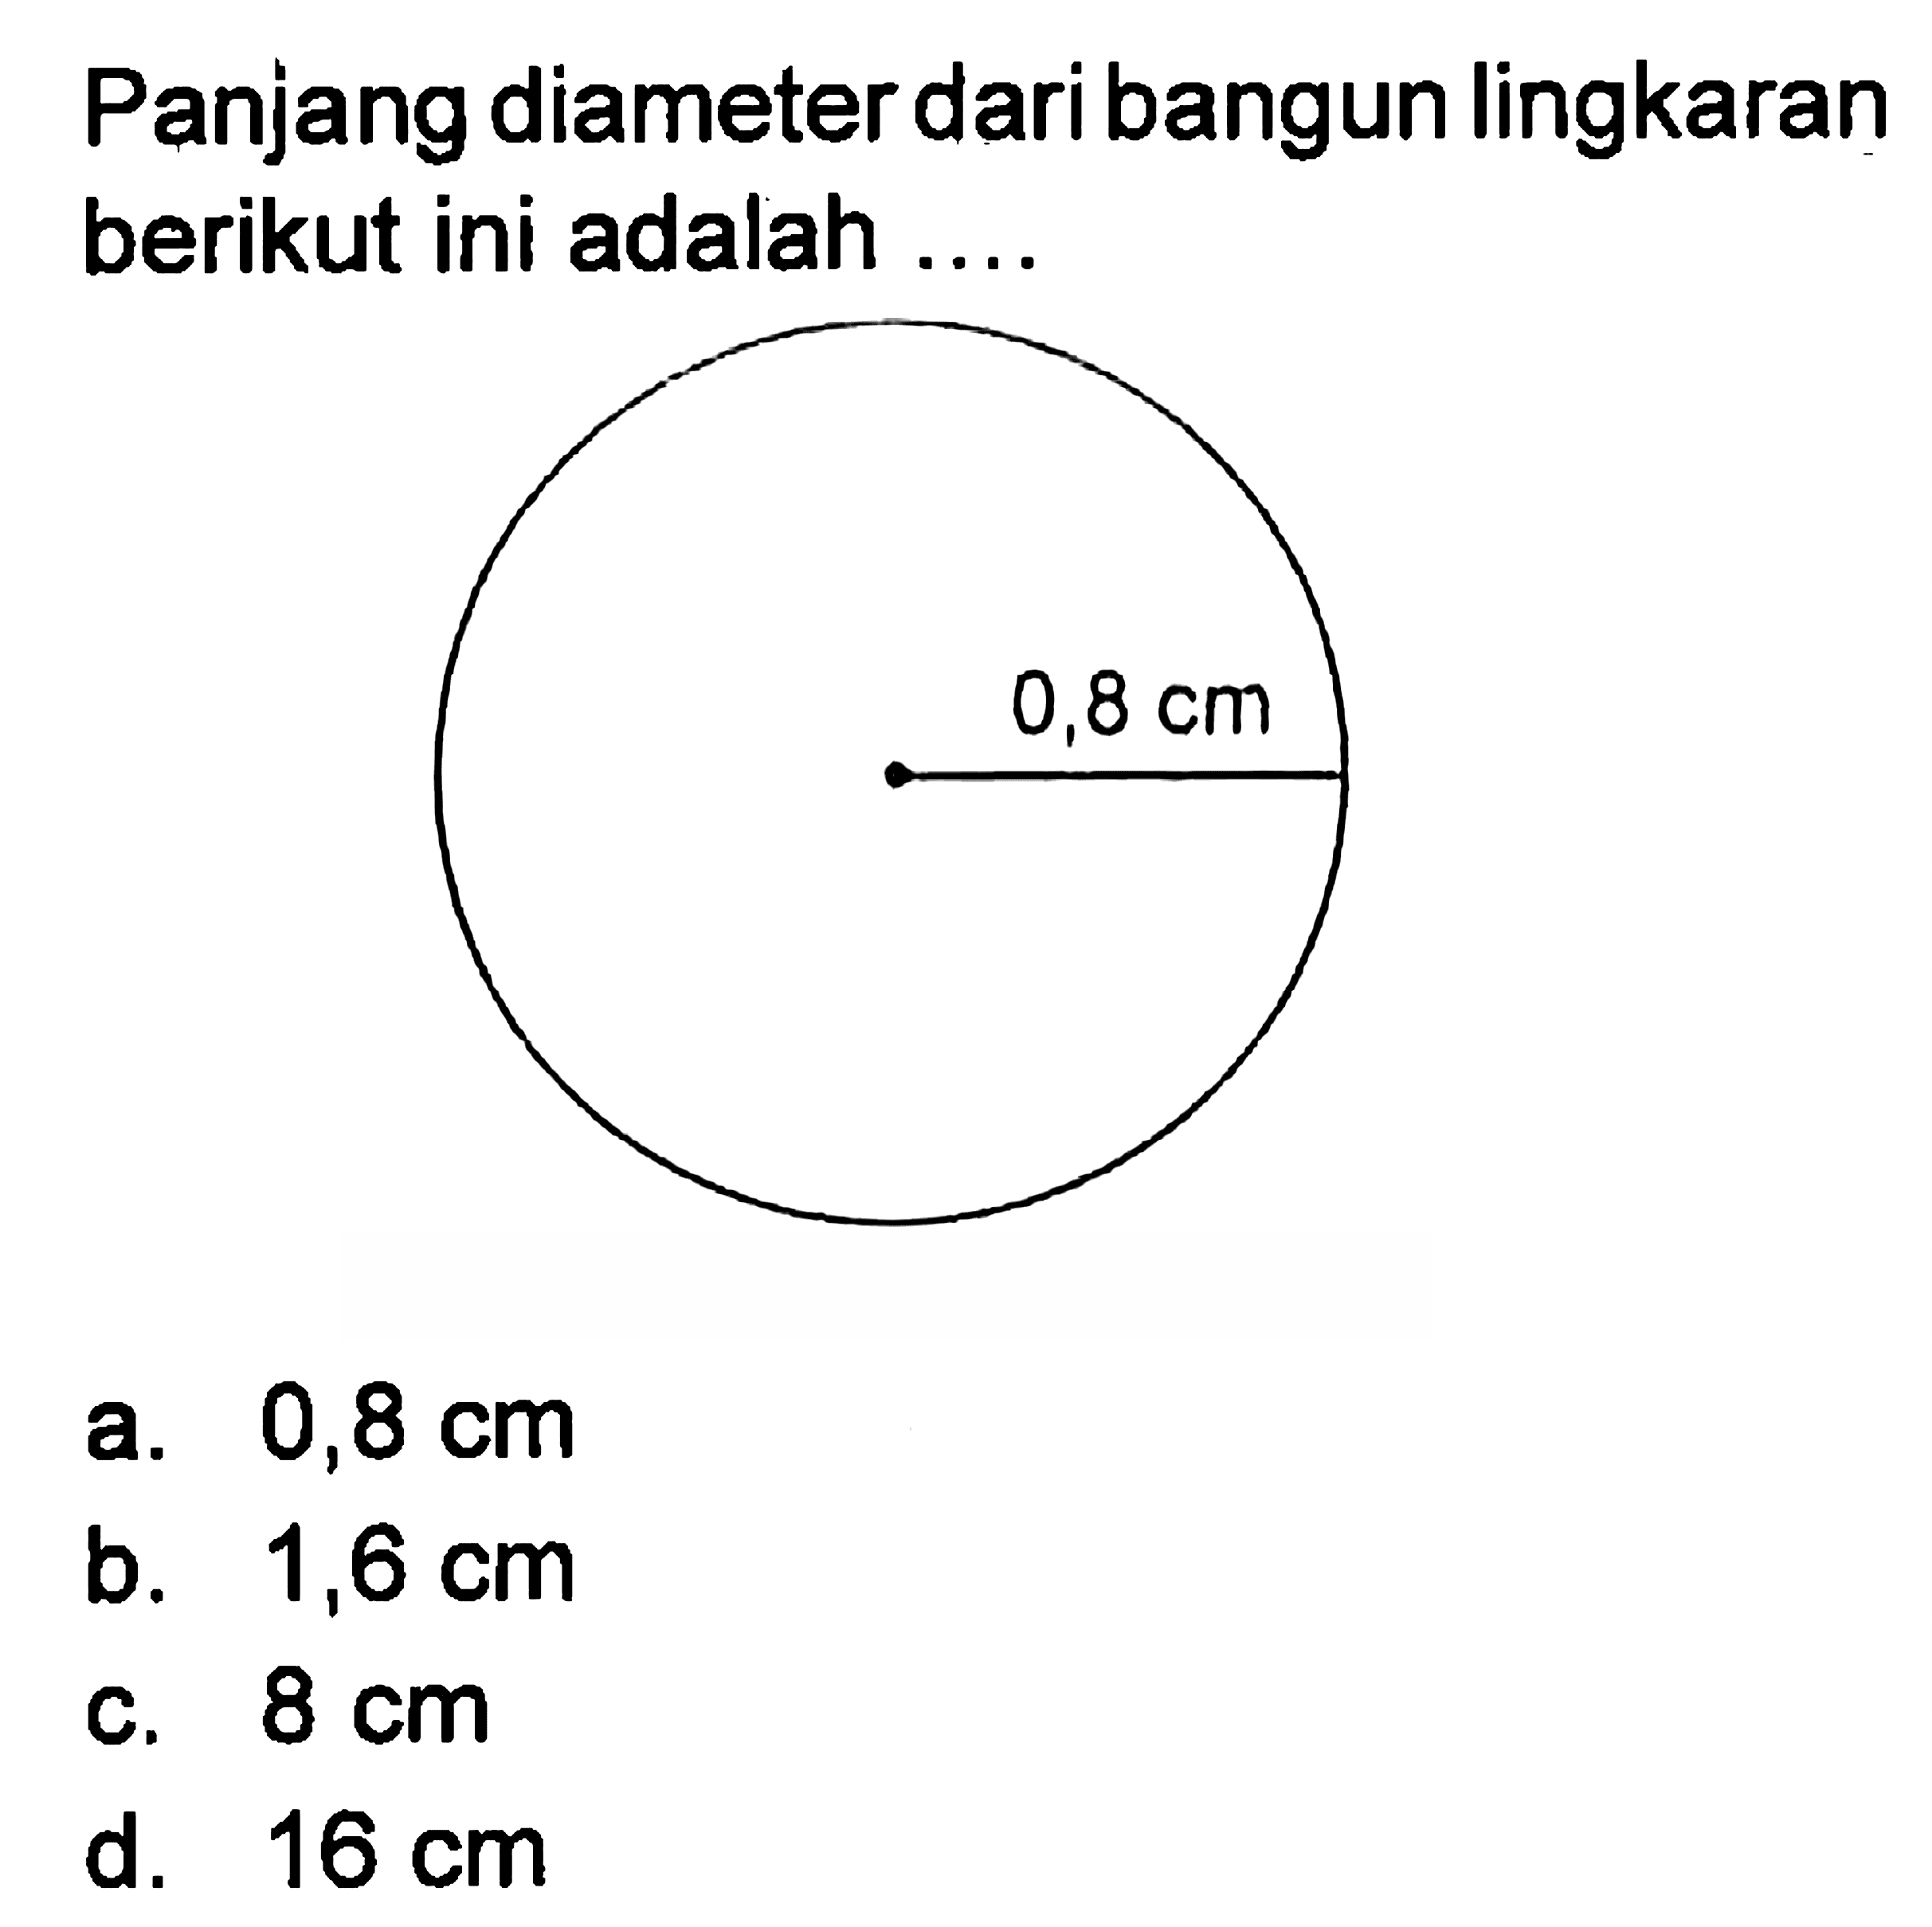 Panjang diameter dari bangun lingkaran berikut ini adalah ... 0,8 cm